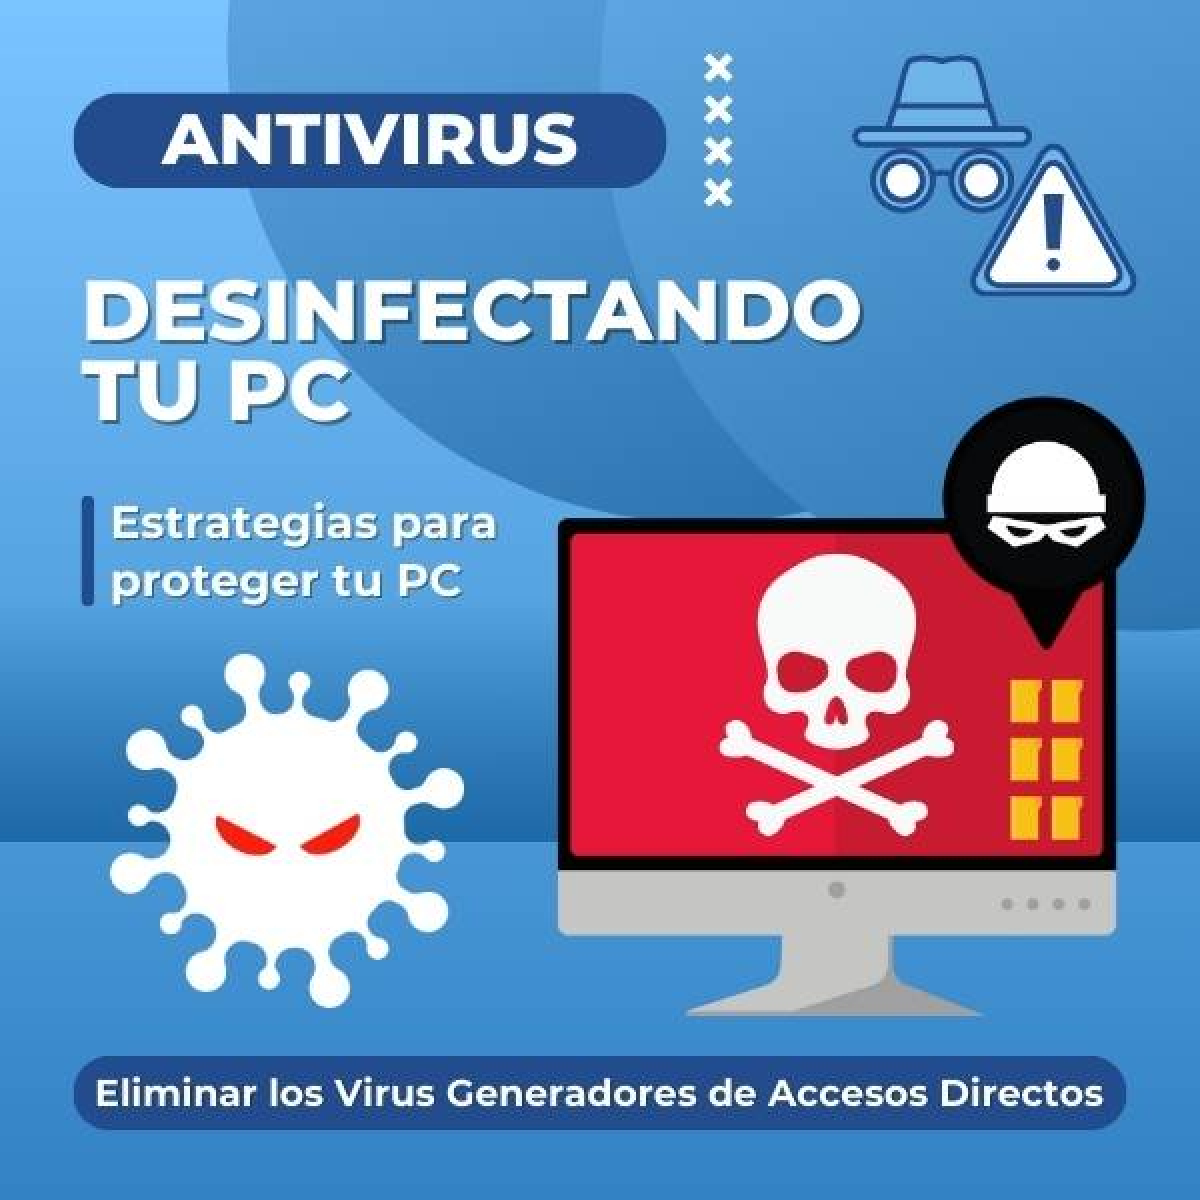 Desinfectando tu PC: Estrategias para Eliminar los Virus Generadores de Accesos Directos